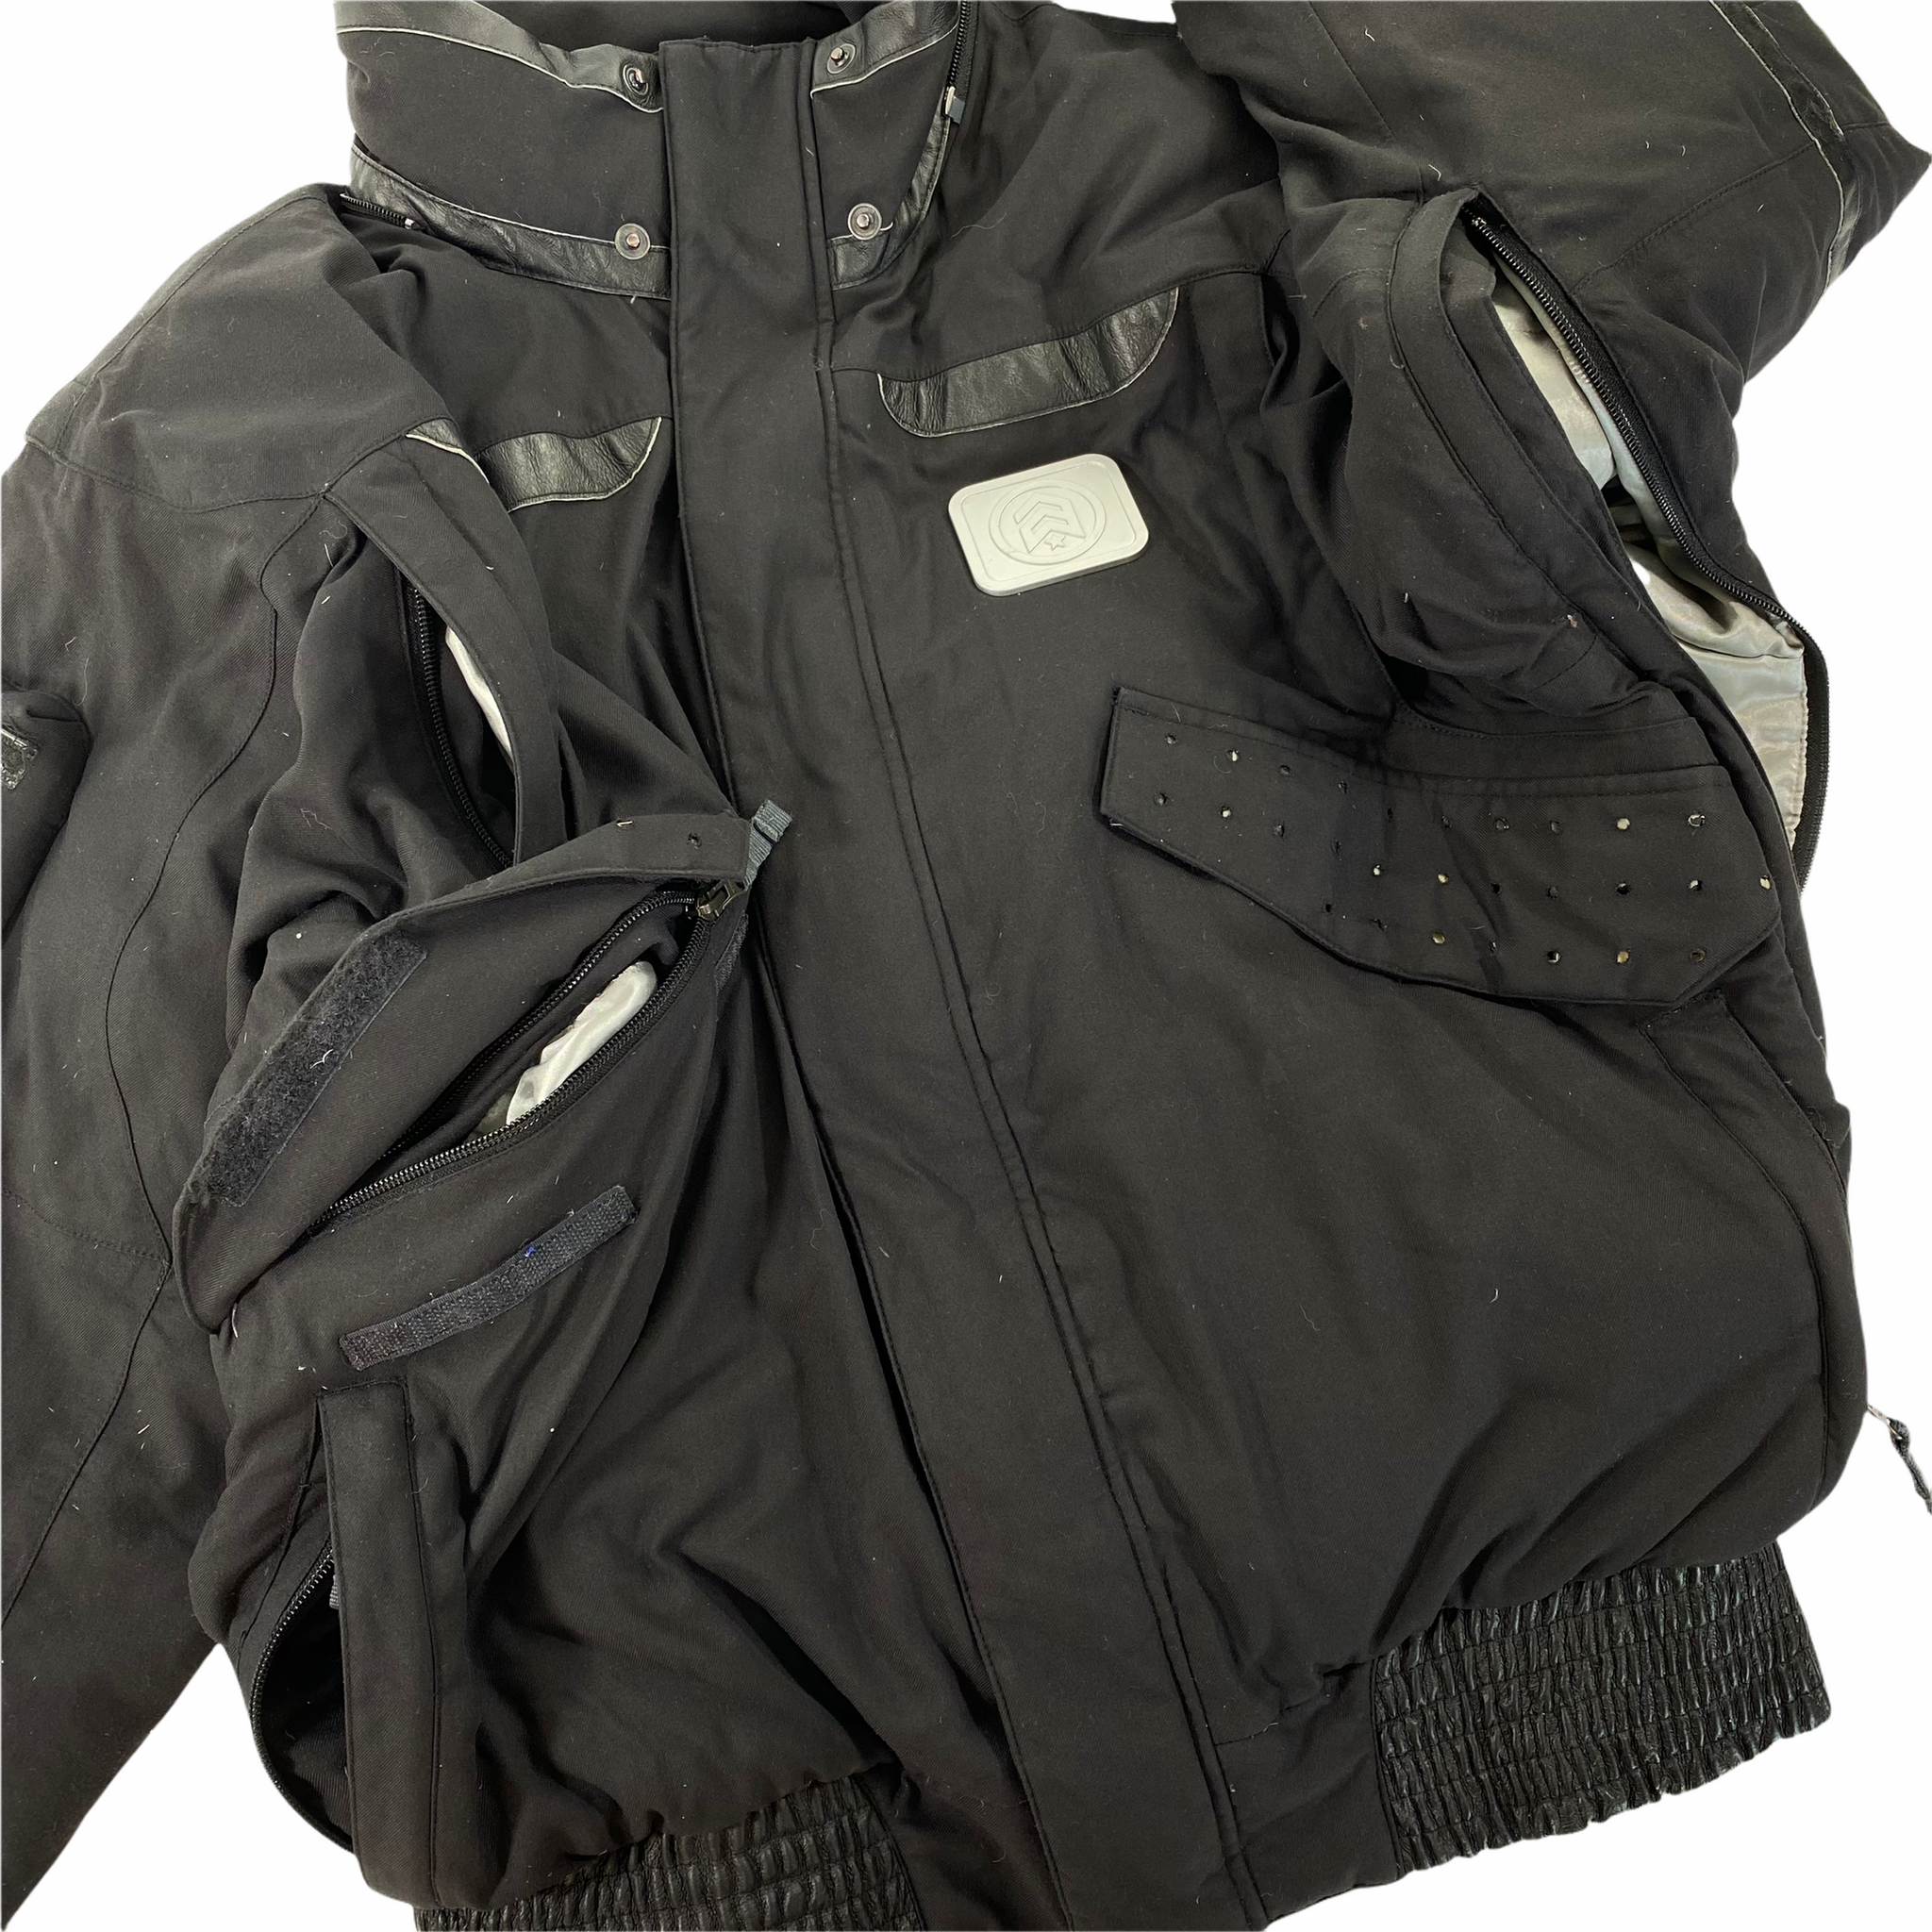 ANALOG bomber jacket. large